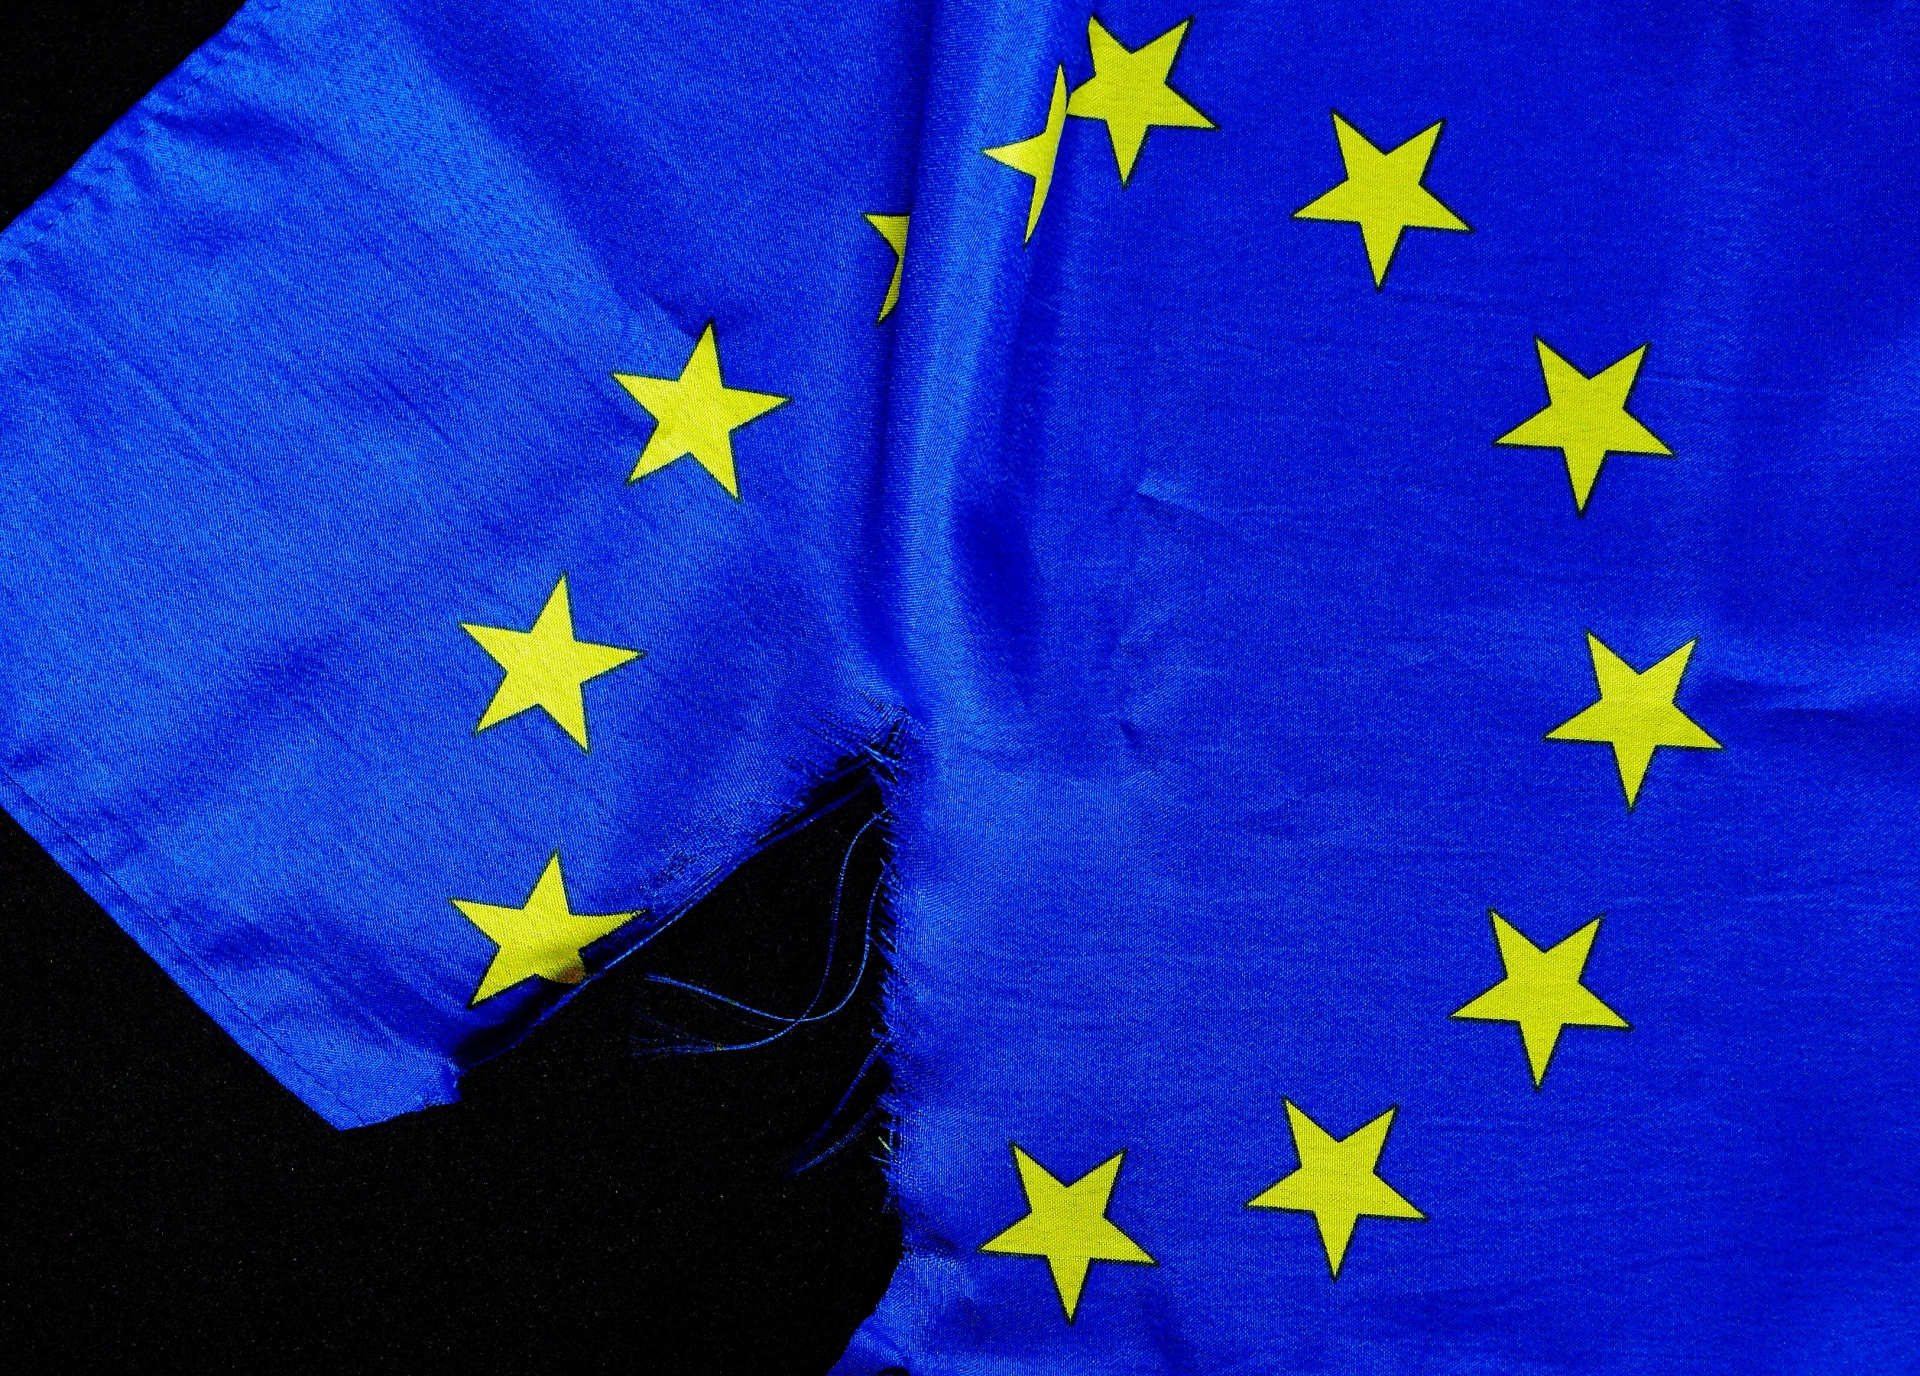 Brexit : Bruxelles met son projet d’accord commercial sur la table malgré des discussions en suspens